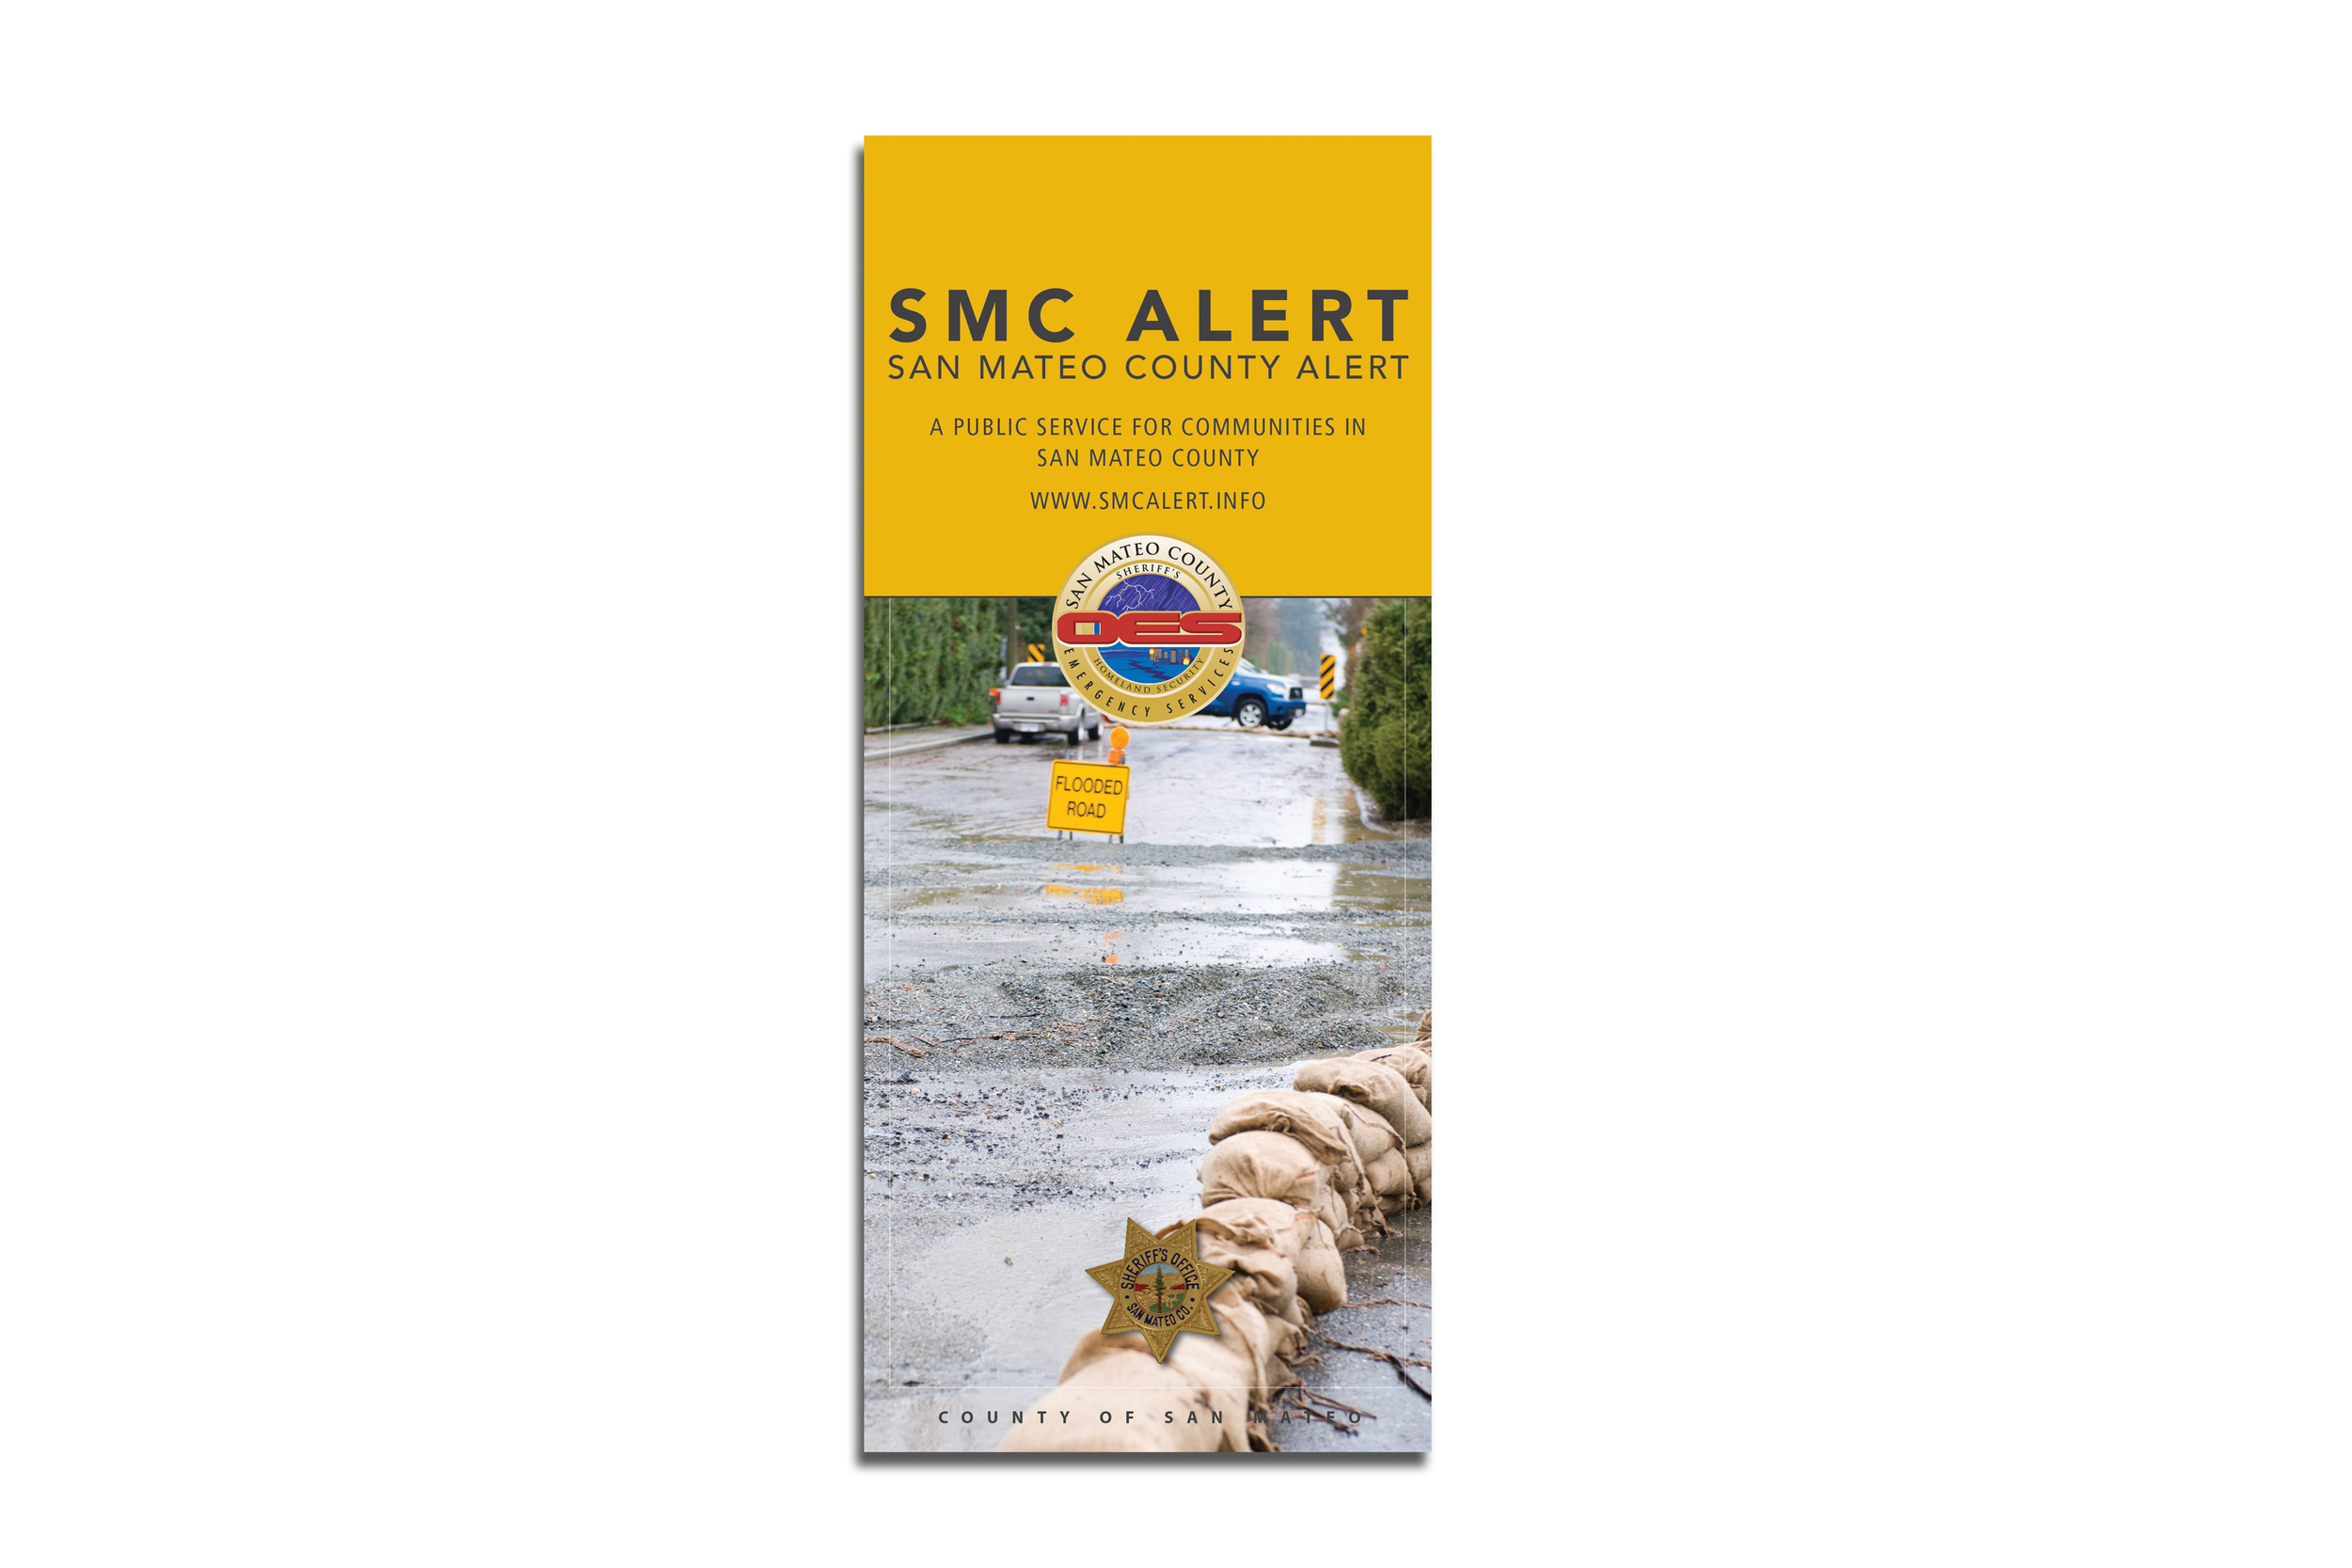 smc-alert-brochure-cover.jpg